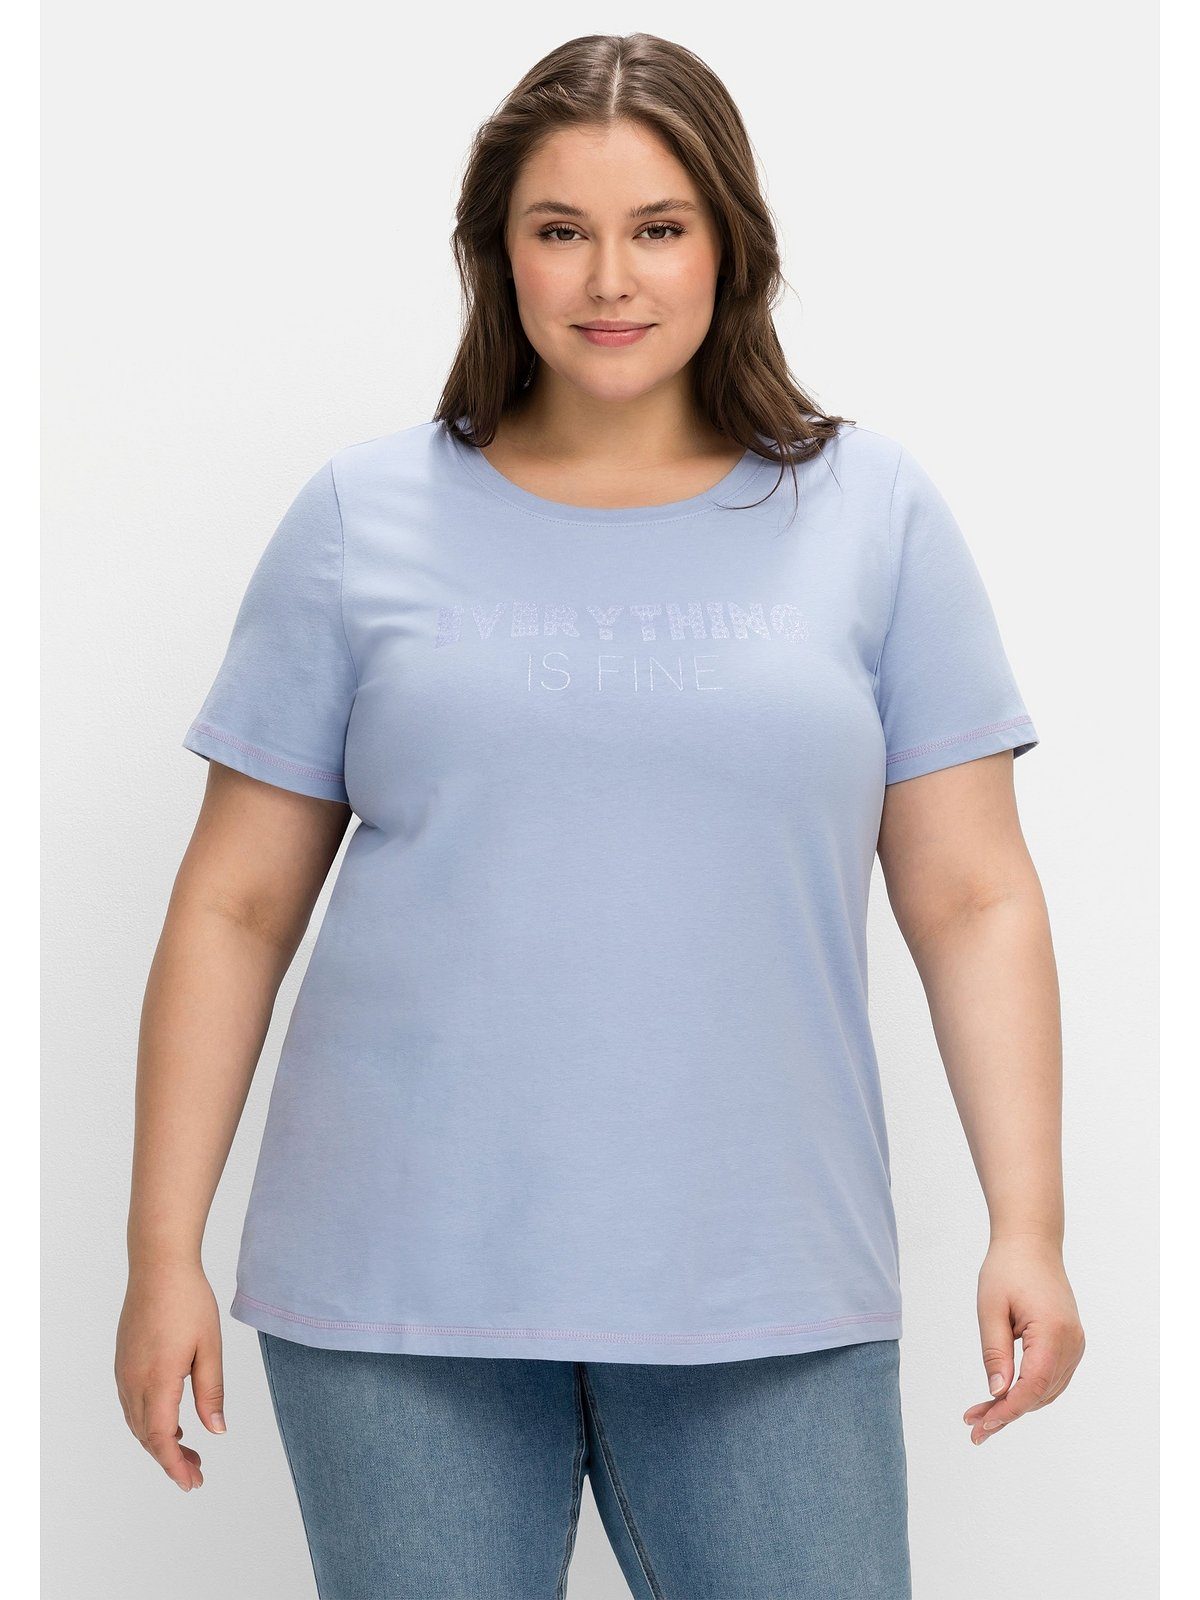 Sheego T-Shirt Große Größen mit Wordingprint, leicht tailliert mittelblau bedruckt | T-Shirts